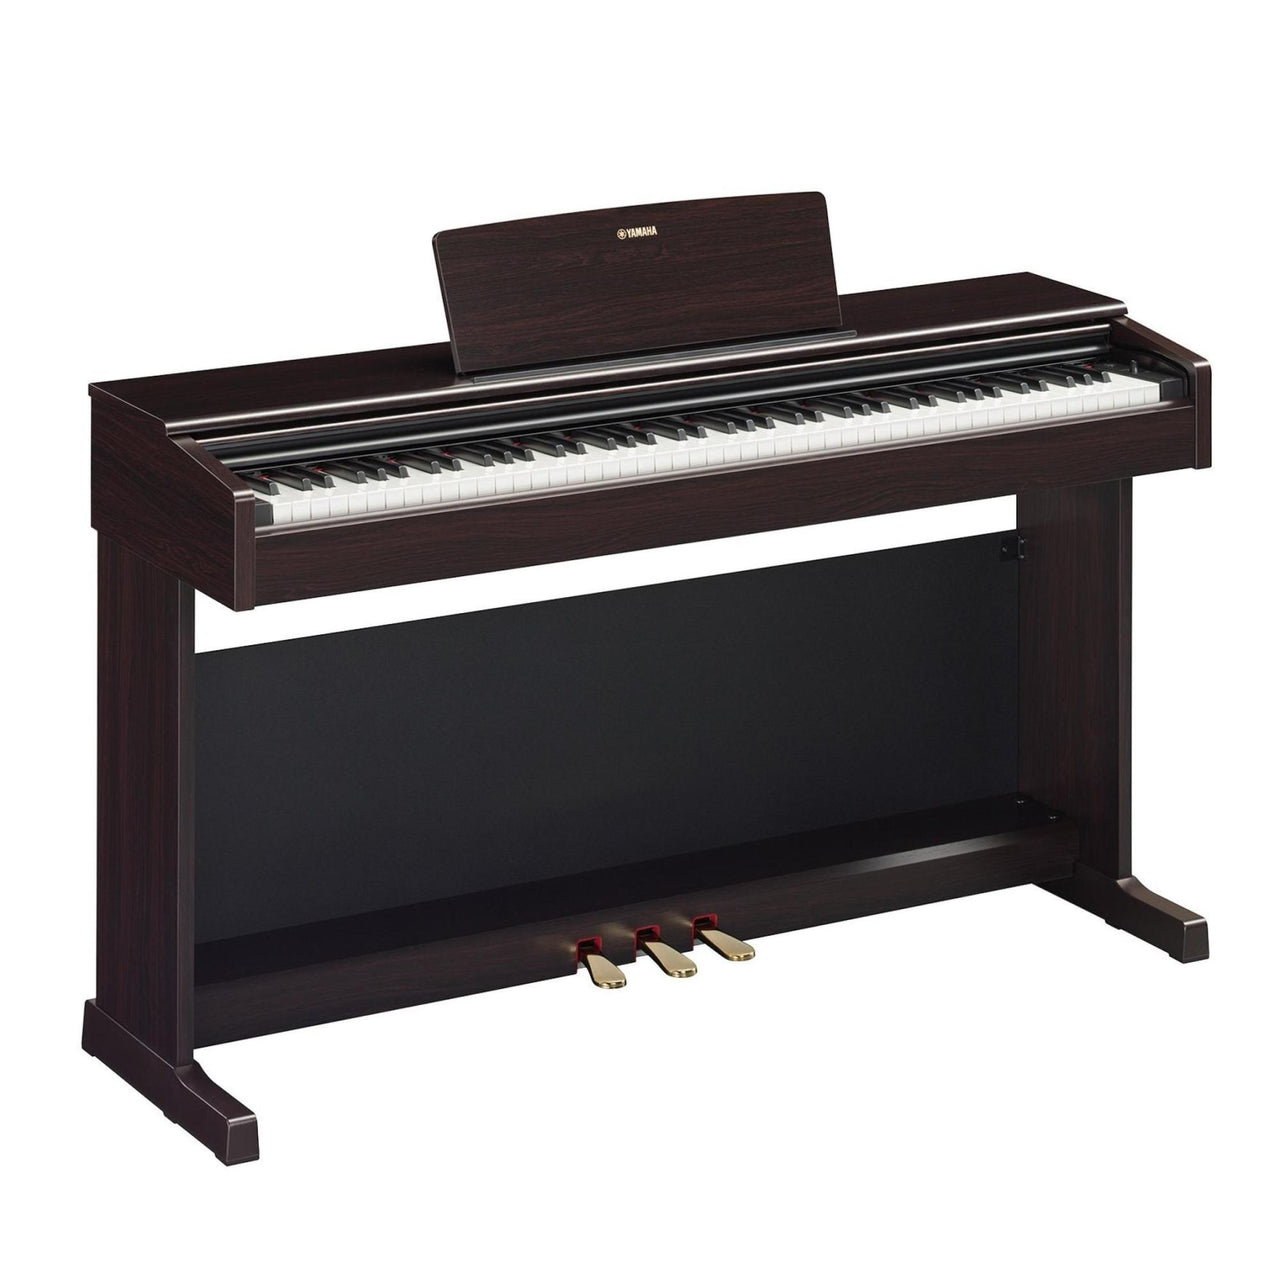 Piano Digital Yamaha Arius Rosewood C/adaptador Pa150, Ydp145rset